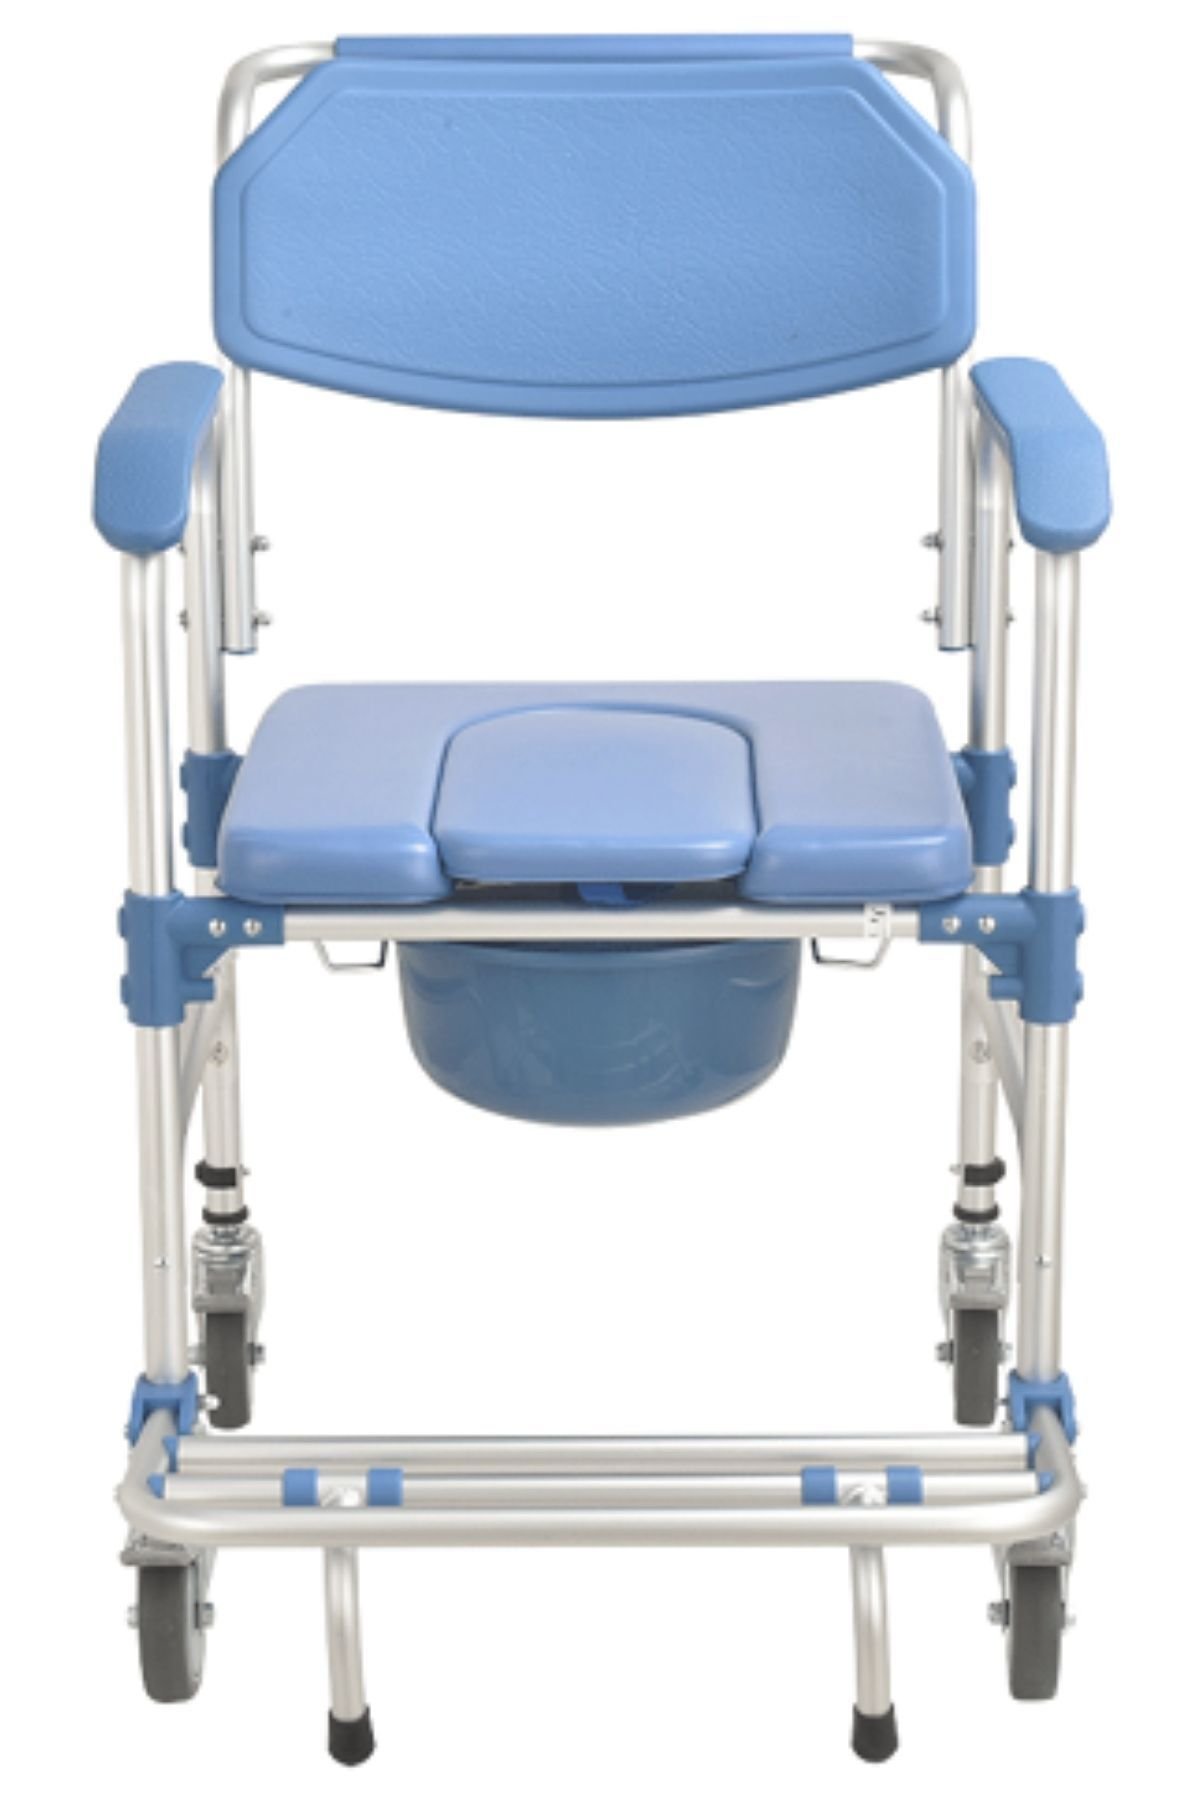 Banyo Sandalyesi | Tuvalet Sandalyesi | Klozetli Tekerlekli Sandalye | Ev içi Kullanılabilir